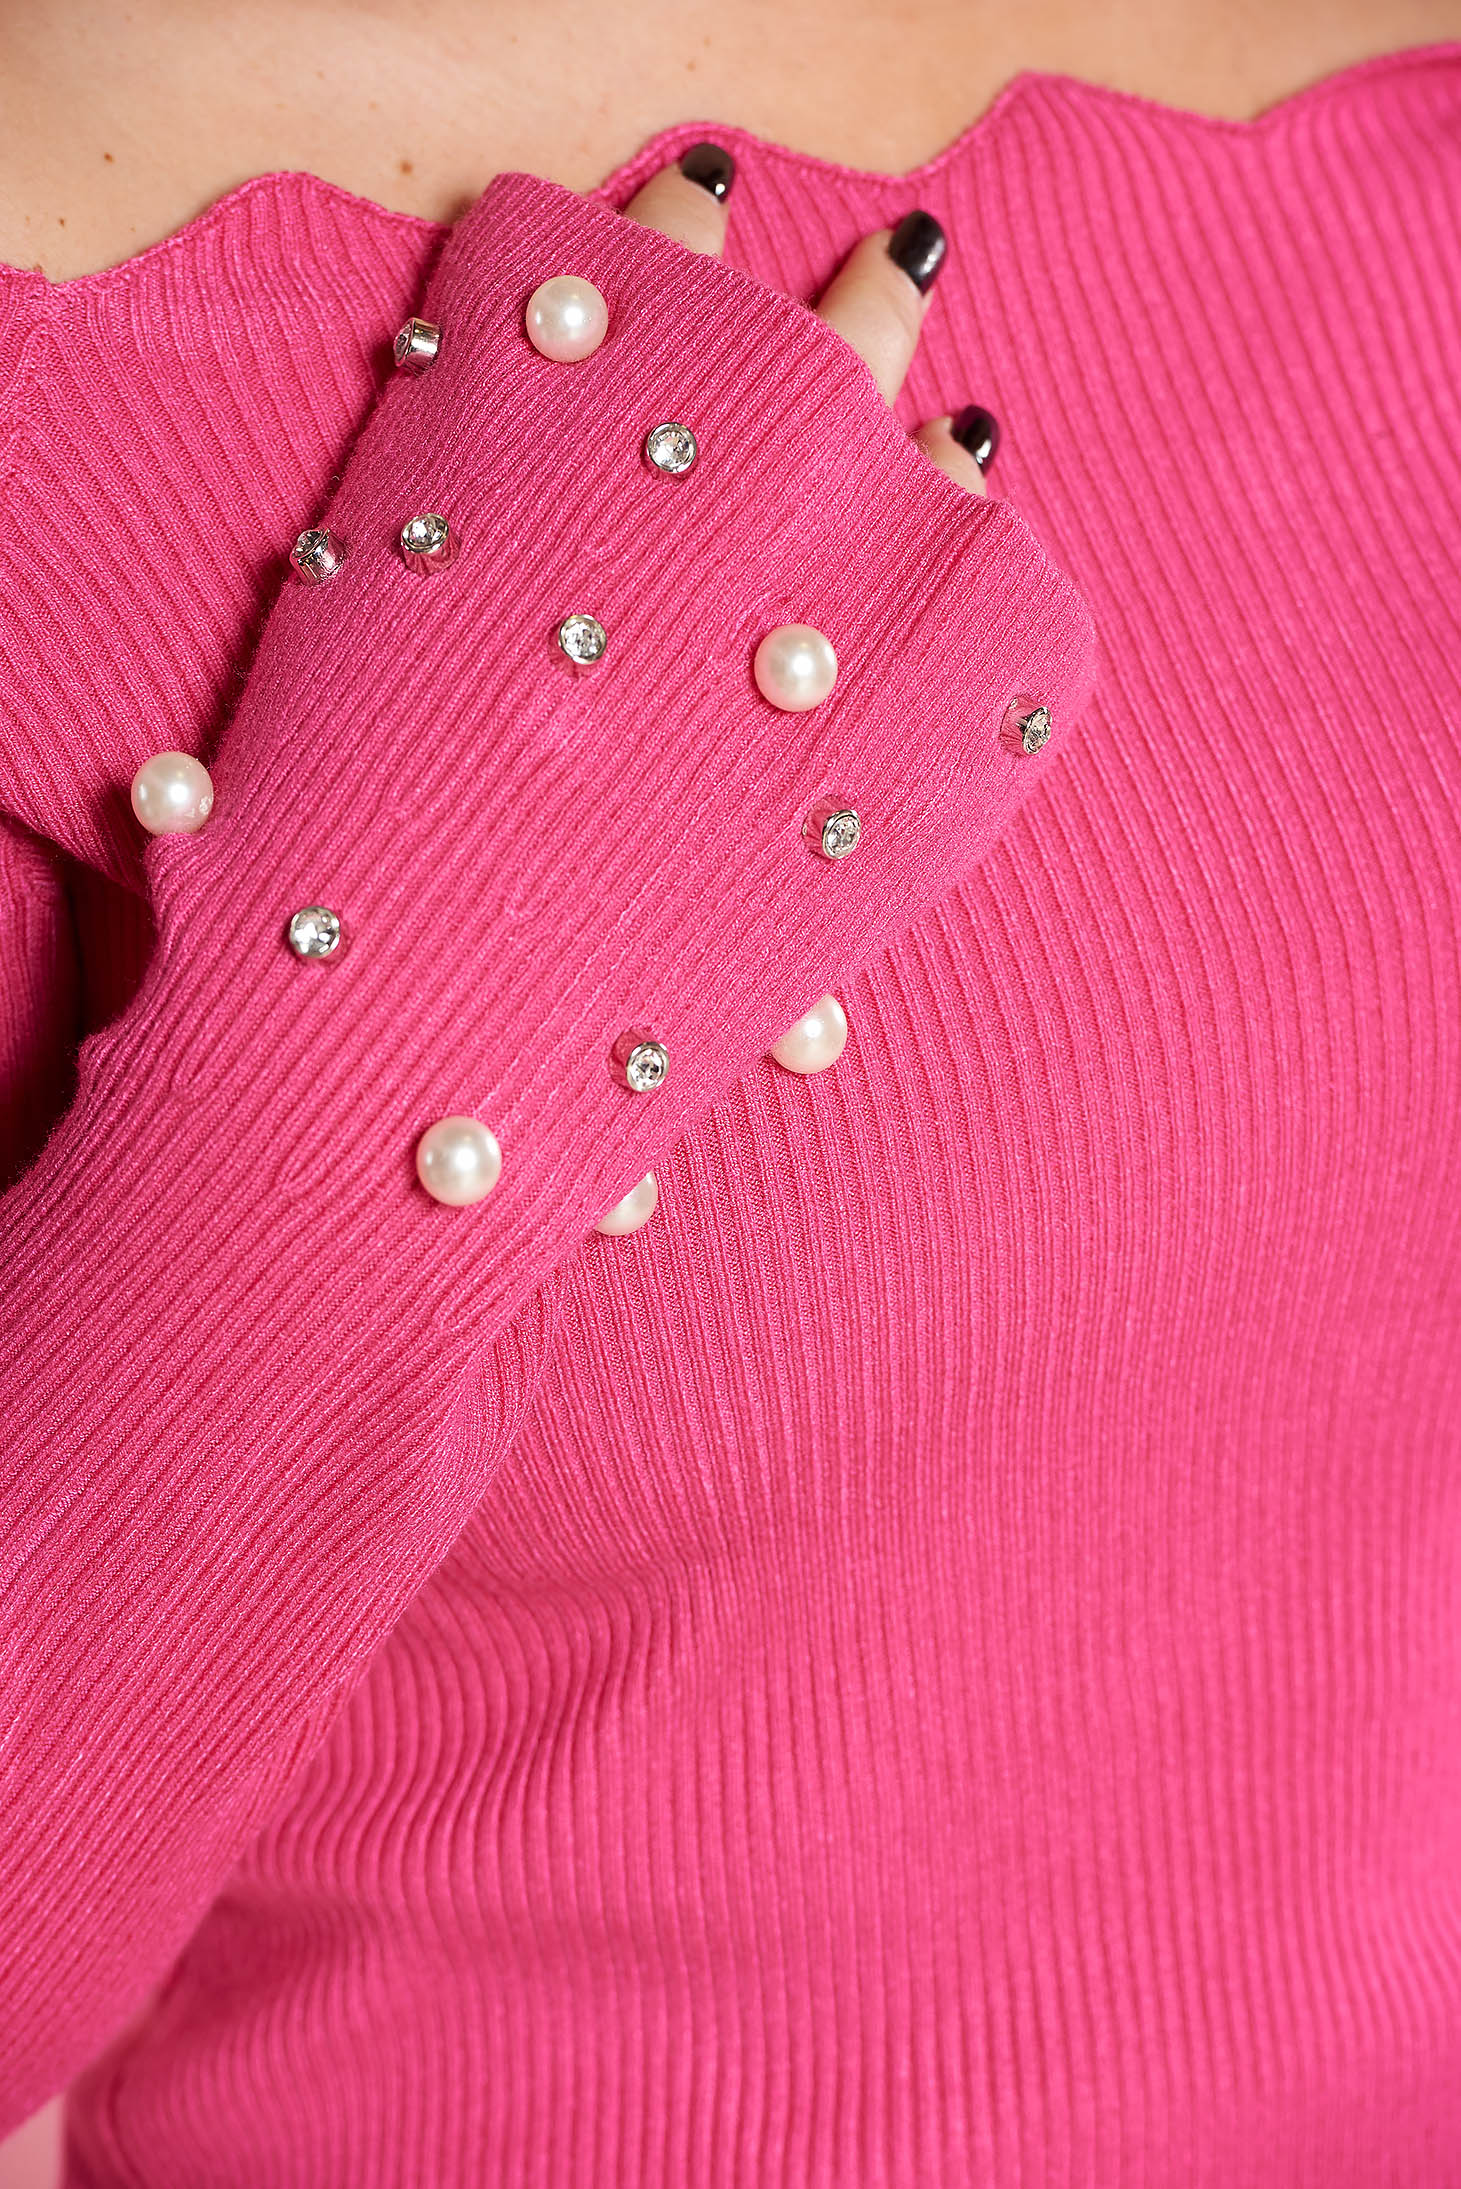 Pink SunShine casual pulóver szűk szabás kötött anyag gyöngy díszítéssel 4 - StarShinerS.hu